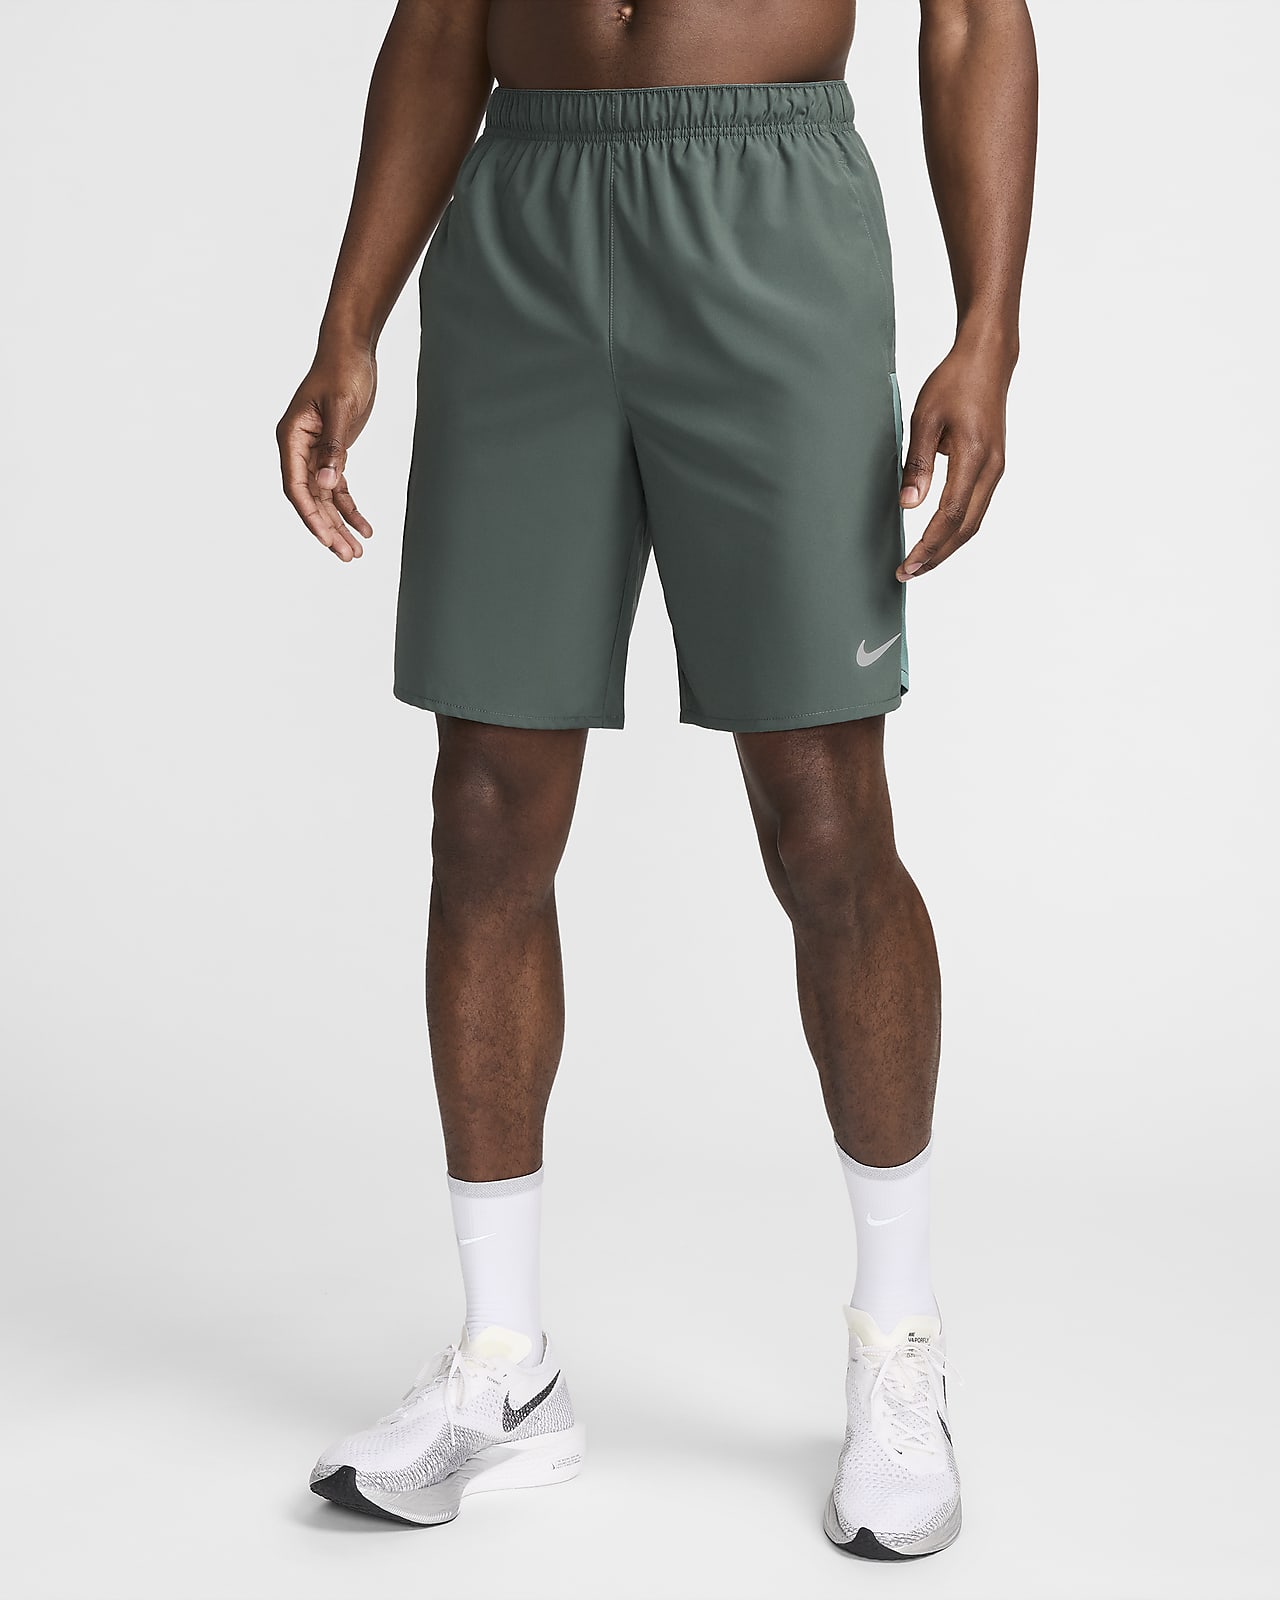 Nike Challenger vielseitige Dri-FIT Herrenshorts ohne Futter (ca. 23 cm)